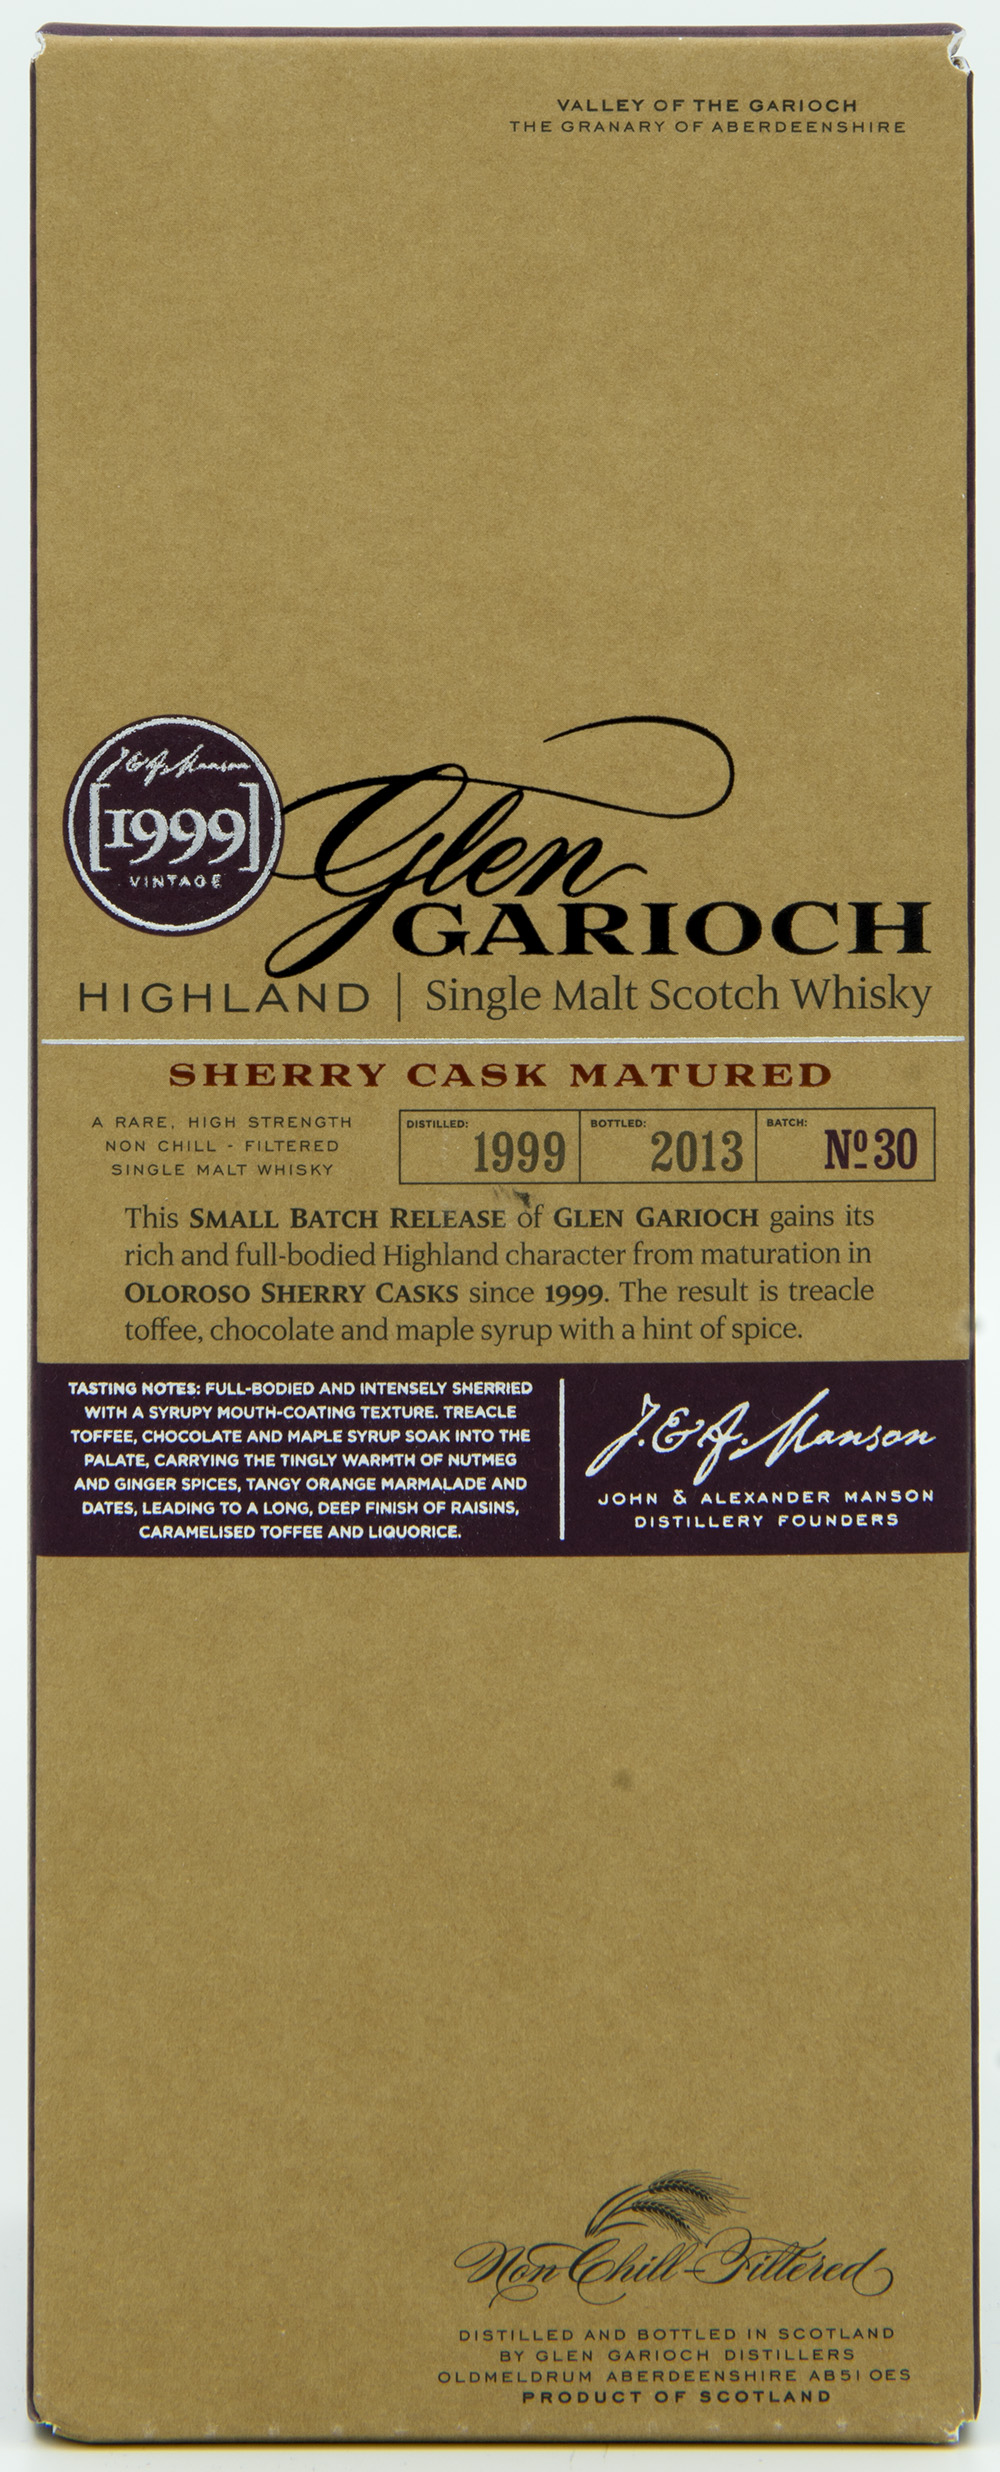 Billede: DSC_6559 GlenGarioch Batch 30 - Sherry Cask Matured 1999-2013 - box front.jpg